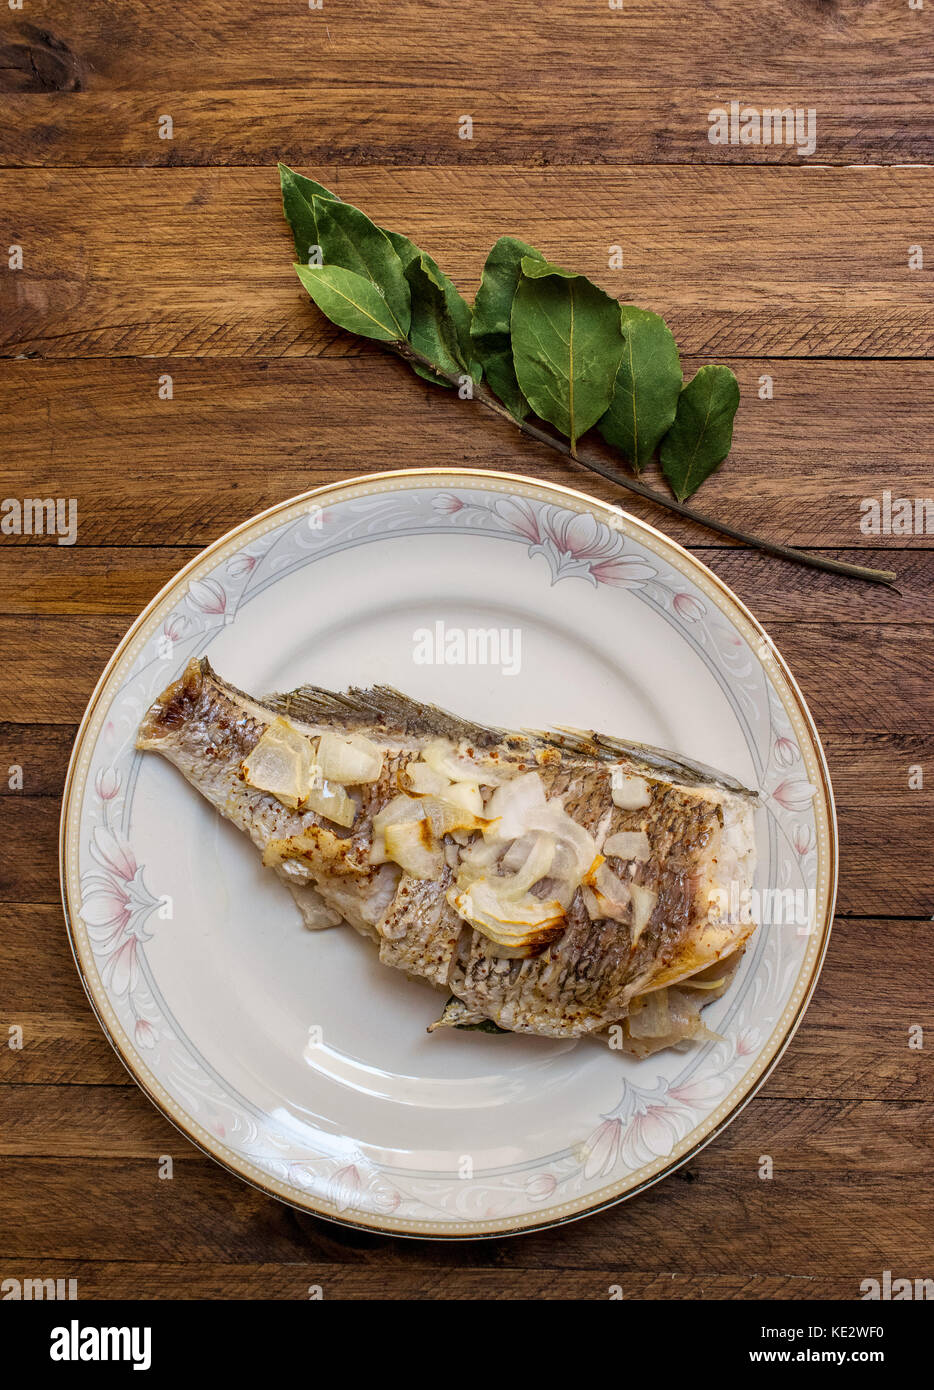 Le poisson entier, cuit au four avec ail et oignon tranché sur le dessus, sur une plaque décorative en porcelaine blanche, sur un fond de bois, avec une feuille de laurier bran Banque D'Images